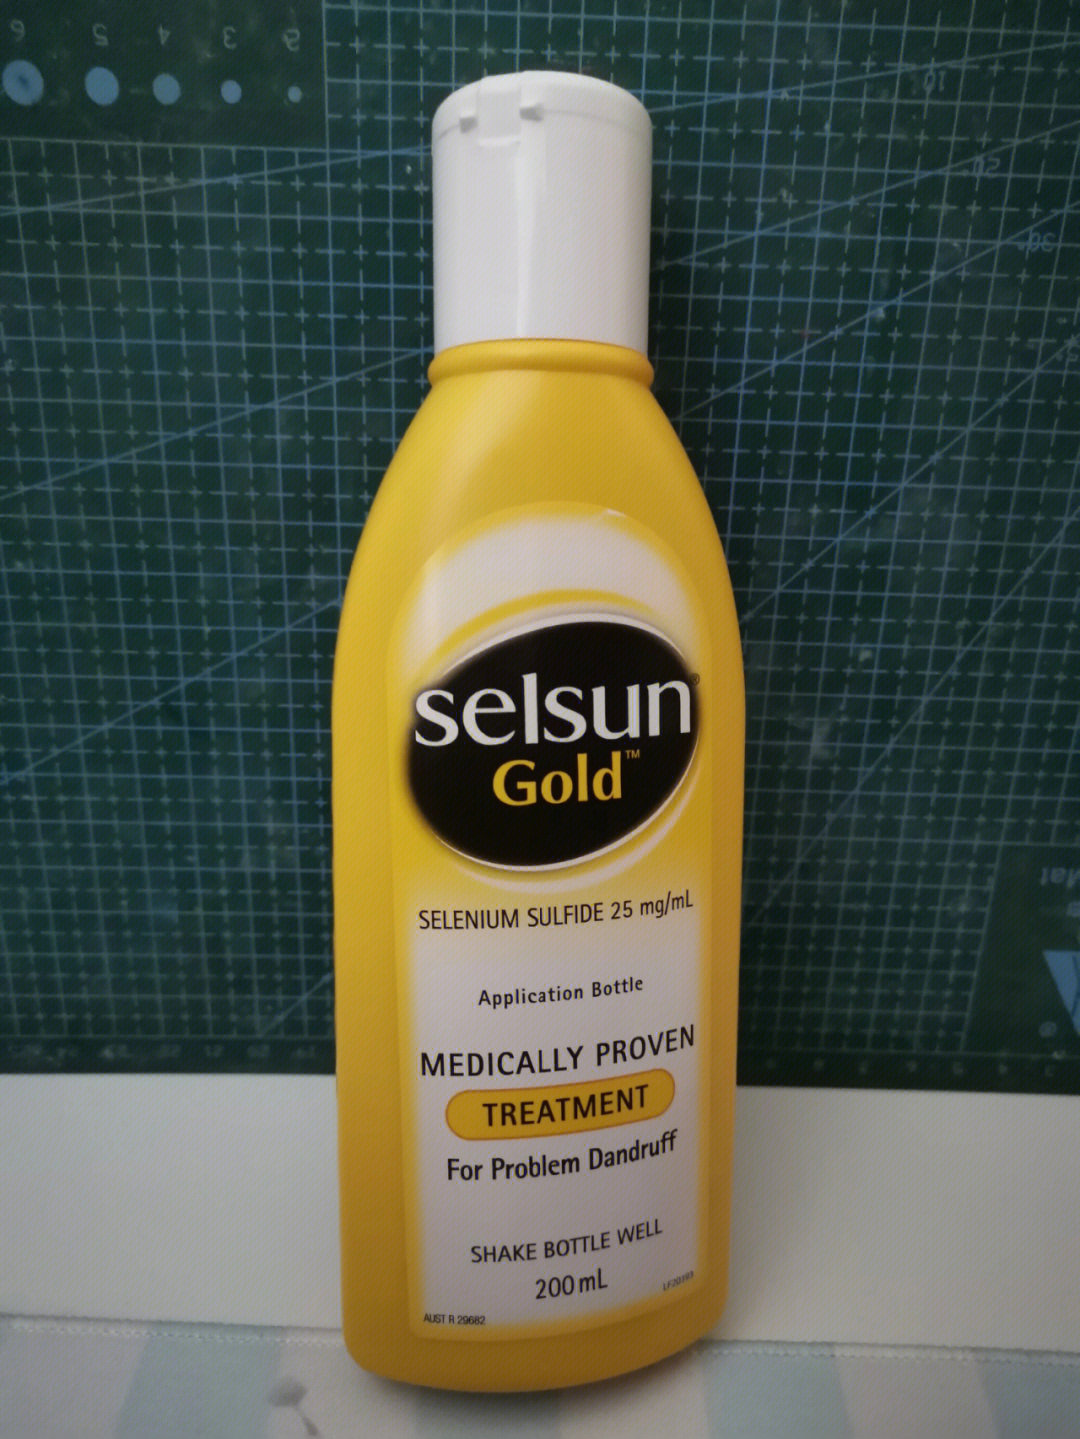 第一次用selsun洗发水,味道挺好闻的,用之前一定要摇匀了,泡沫挺多,就